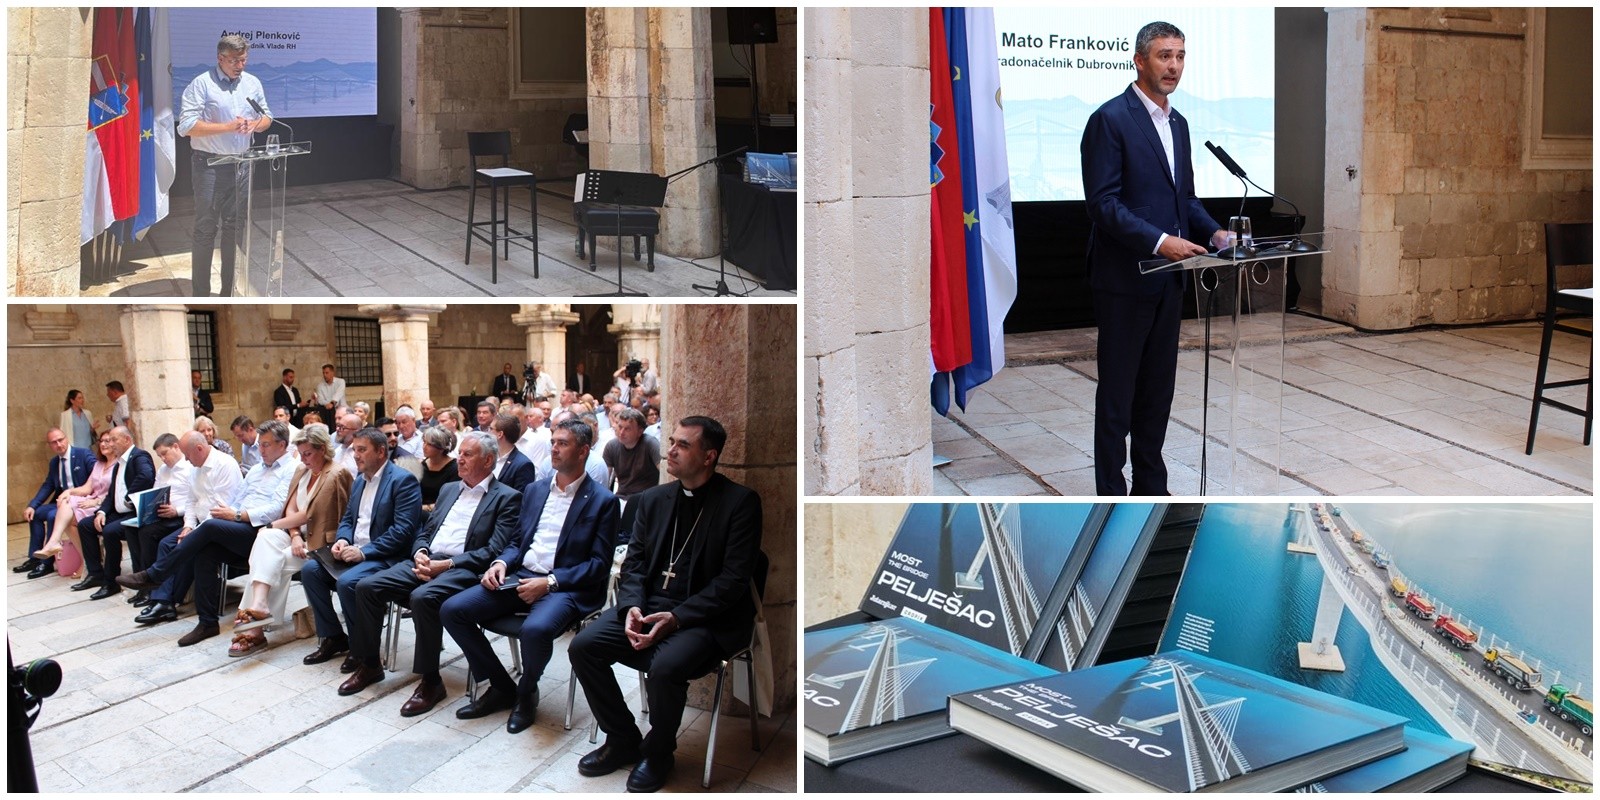 Gradonačelnik Franković u Sponzi nazočio predstavljanju monografije “Most Pelješac”